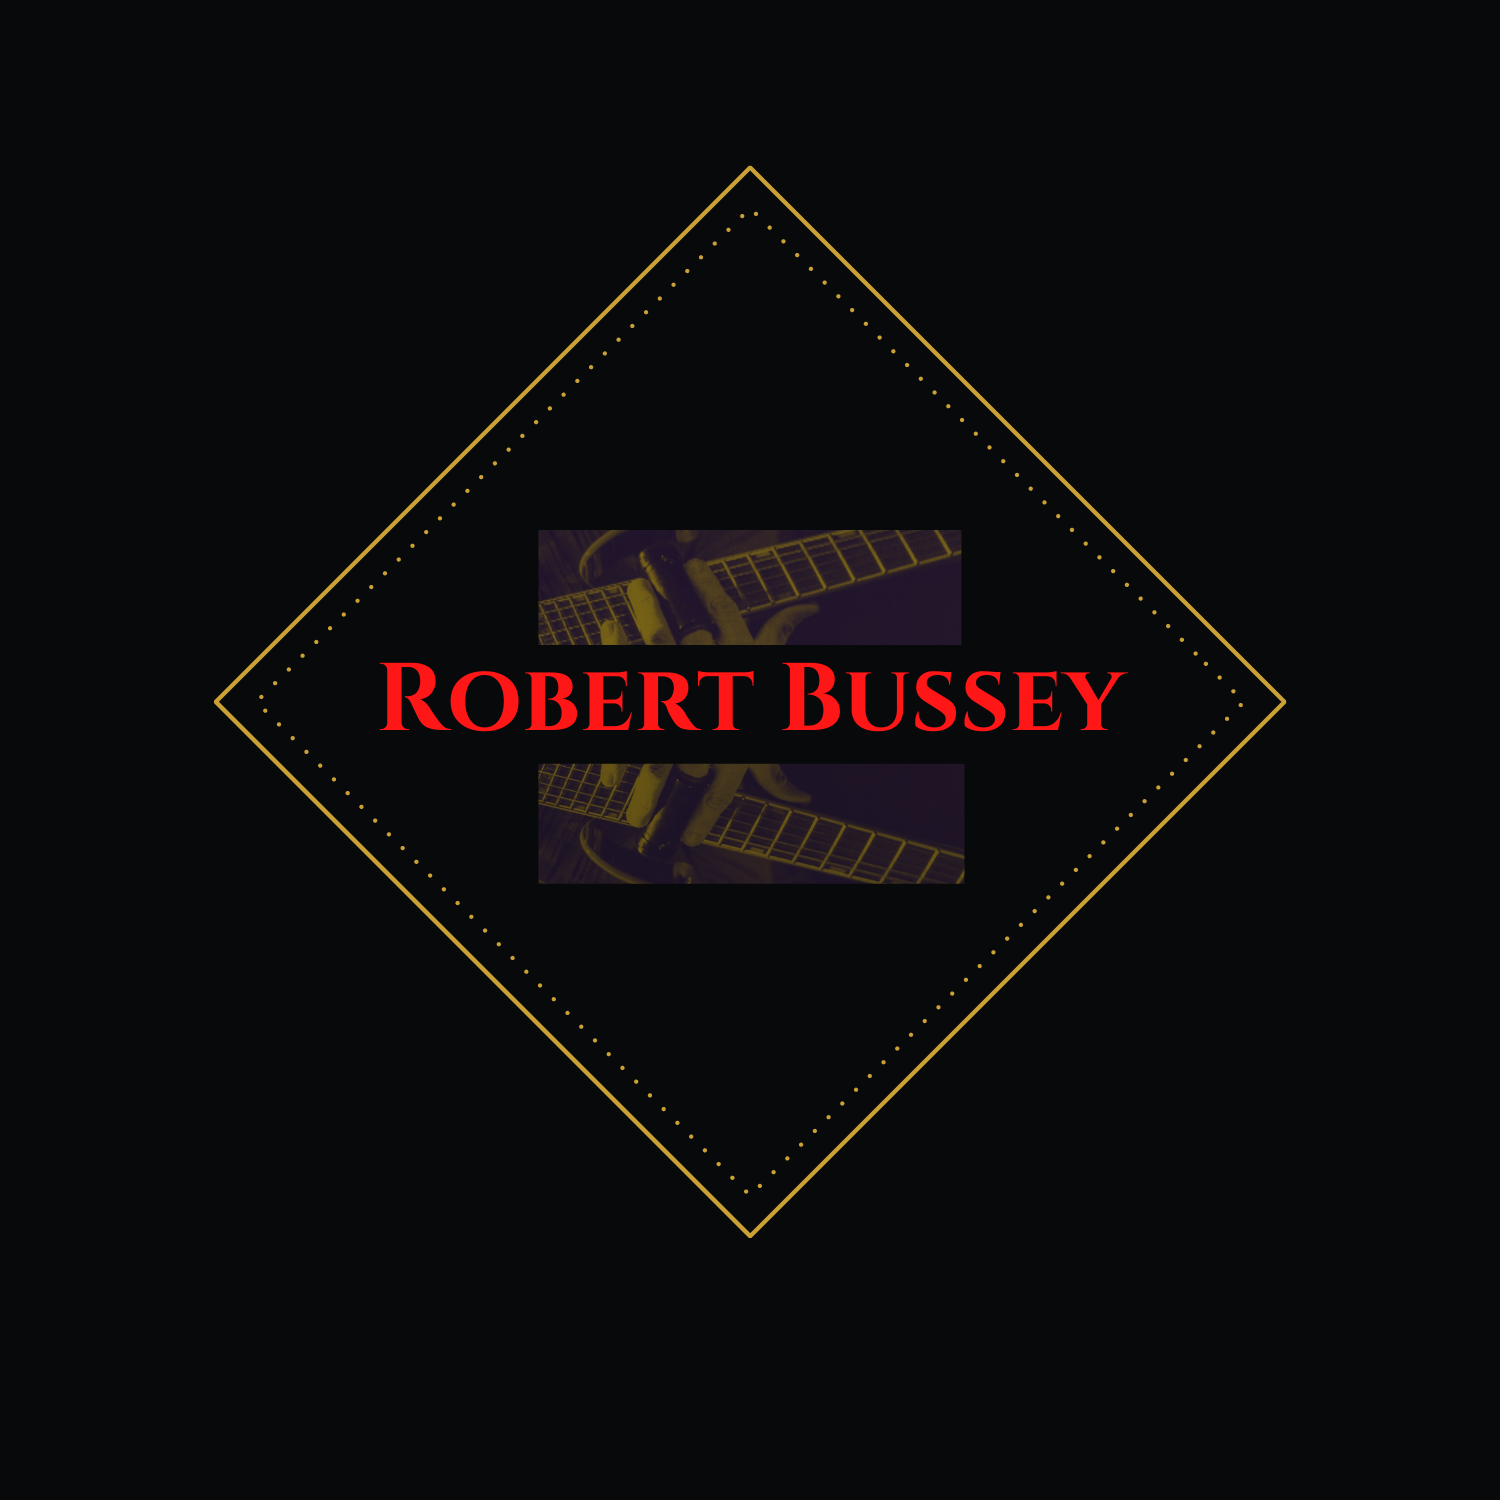 Robert Bussey